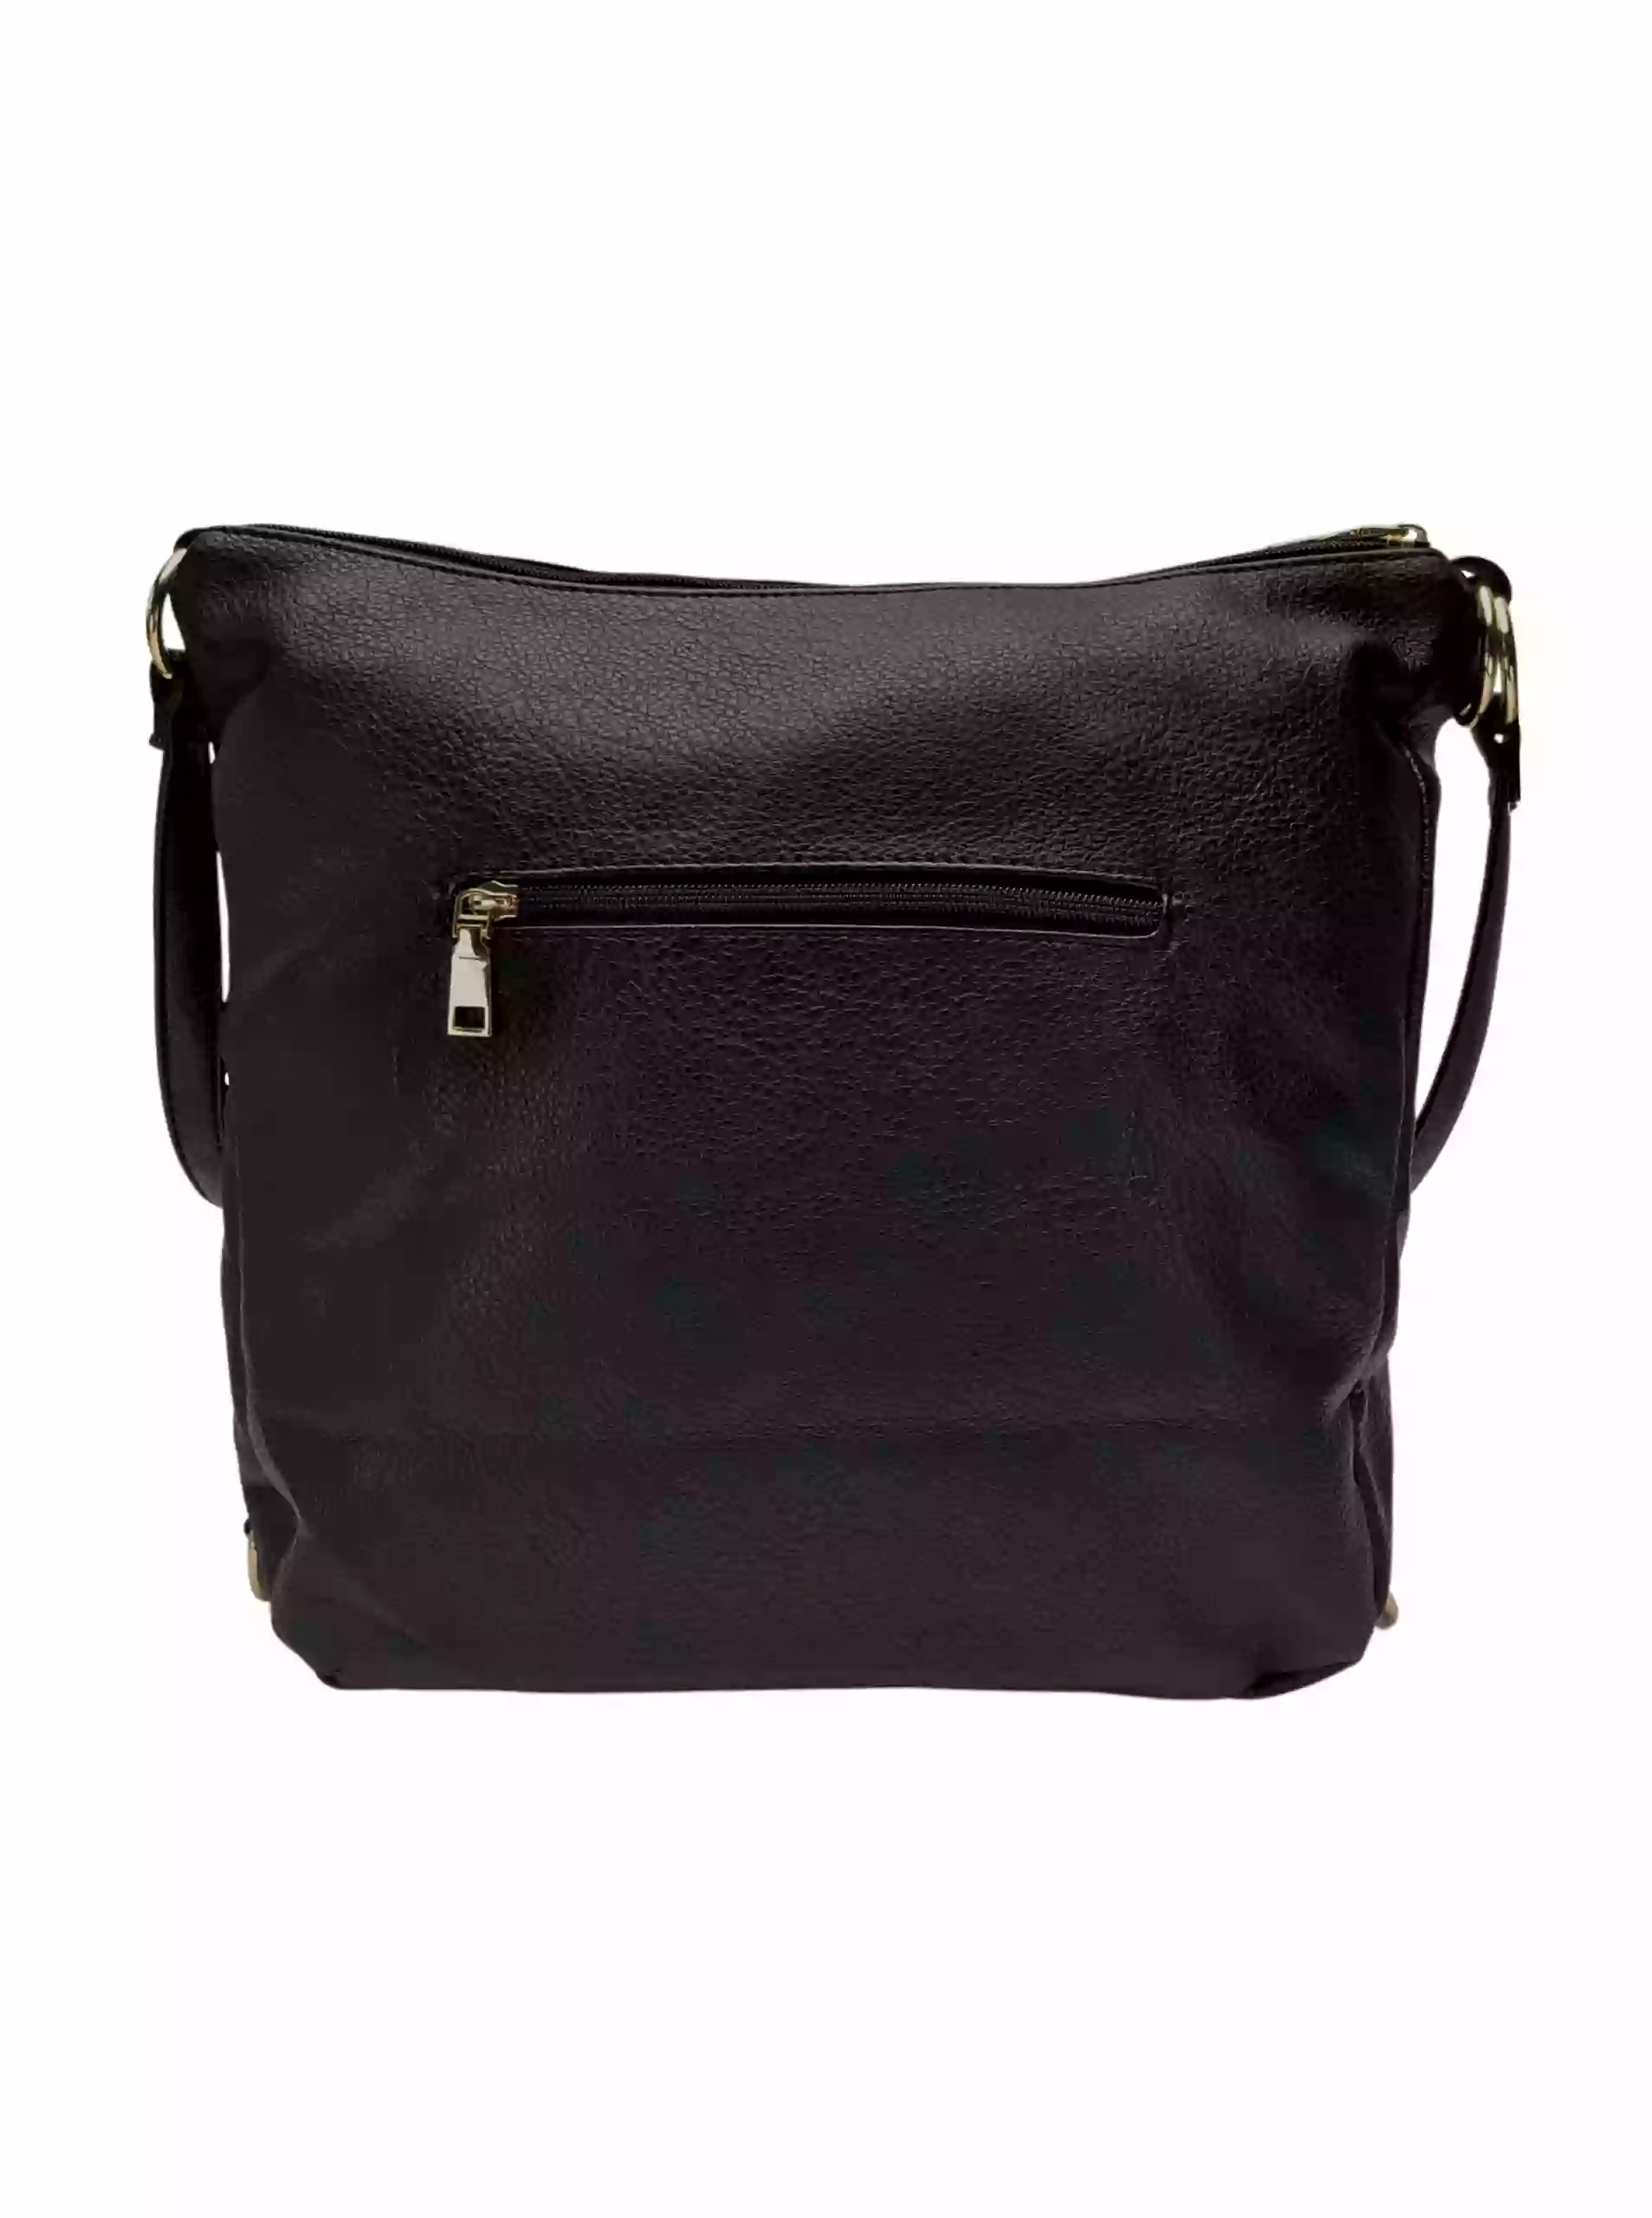 Velký černý kabelko-batoh 2v1 s kapsou, Int. Company, H23, zadní strana kabelko-batohu